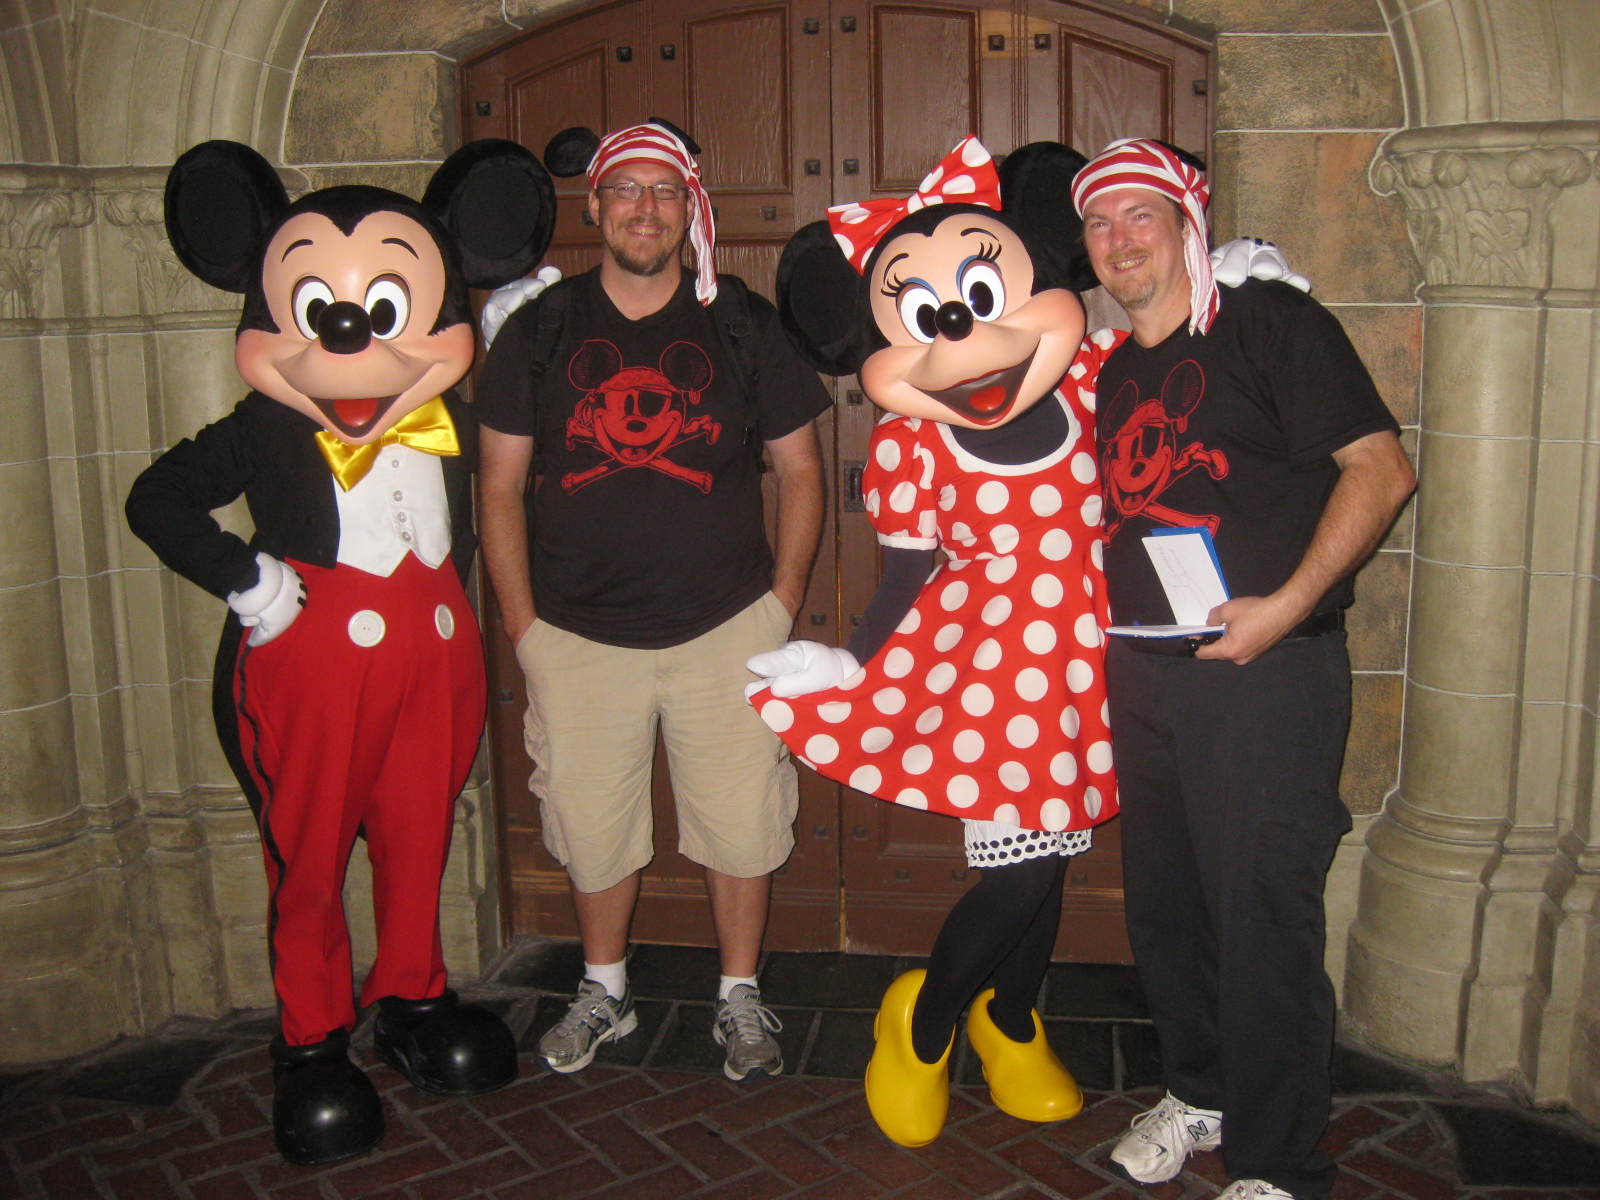 Mickey and Minnie at Fantasyland in Magic Kingdom 2011